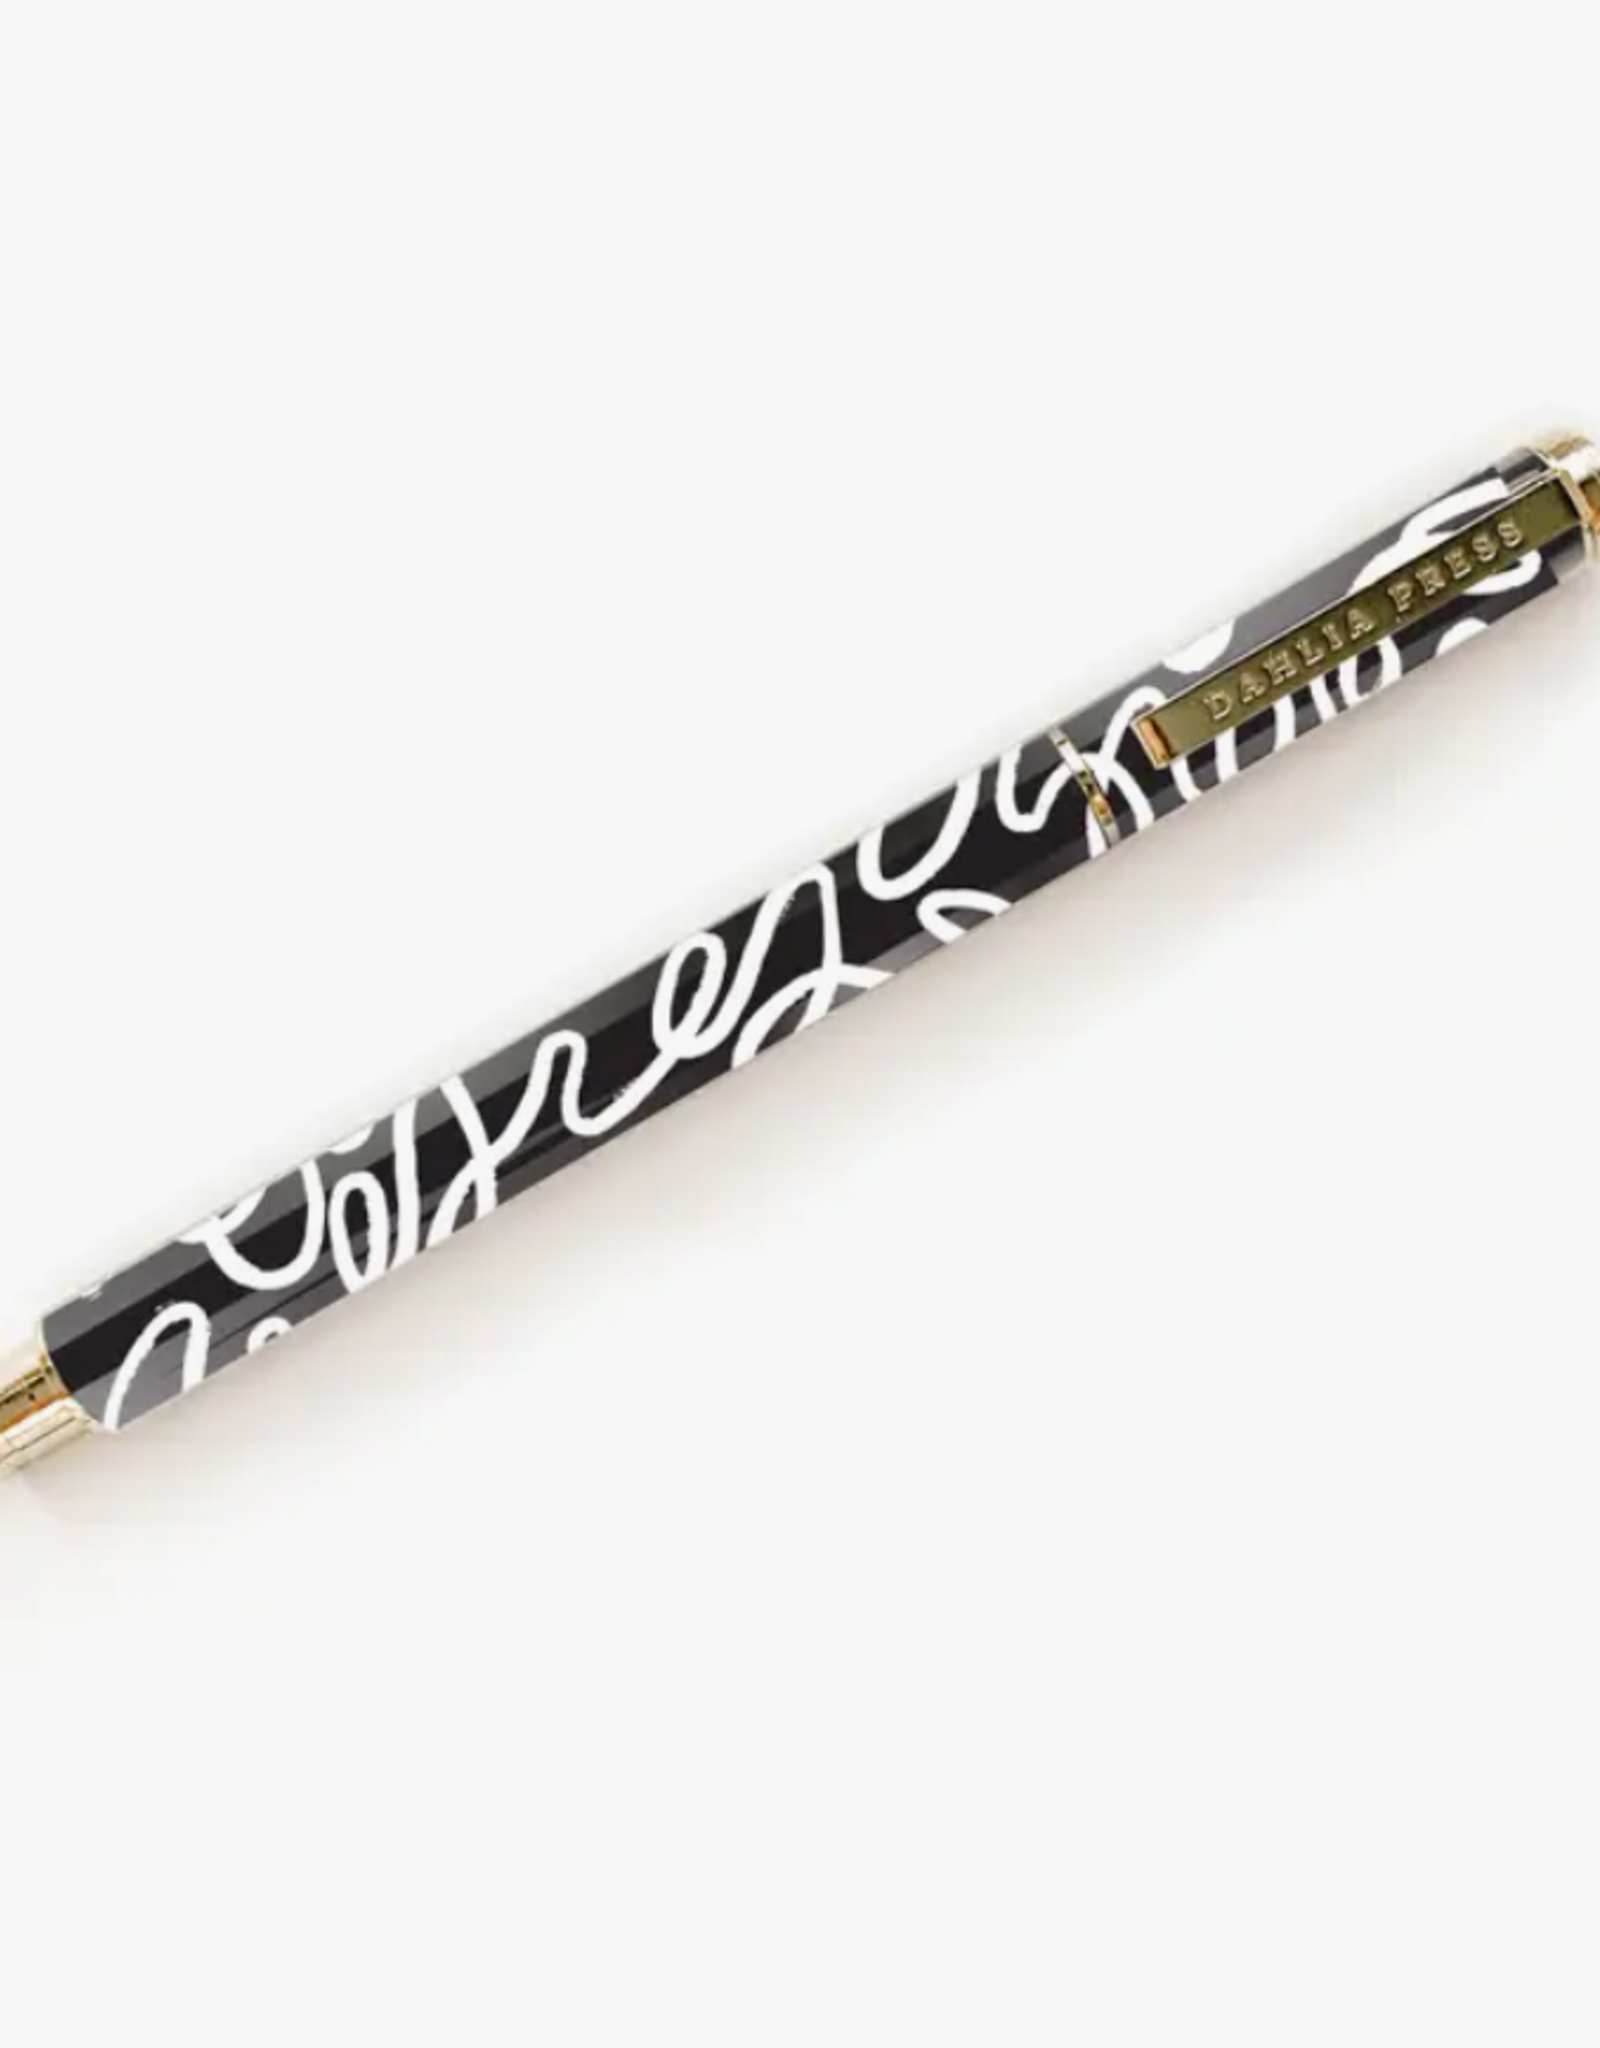 Dahlia Press Pen - Squiggle